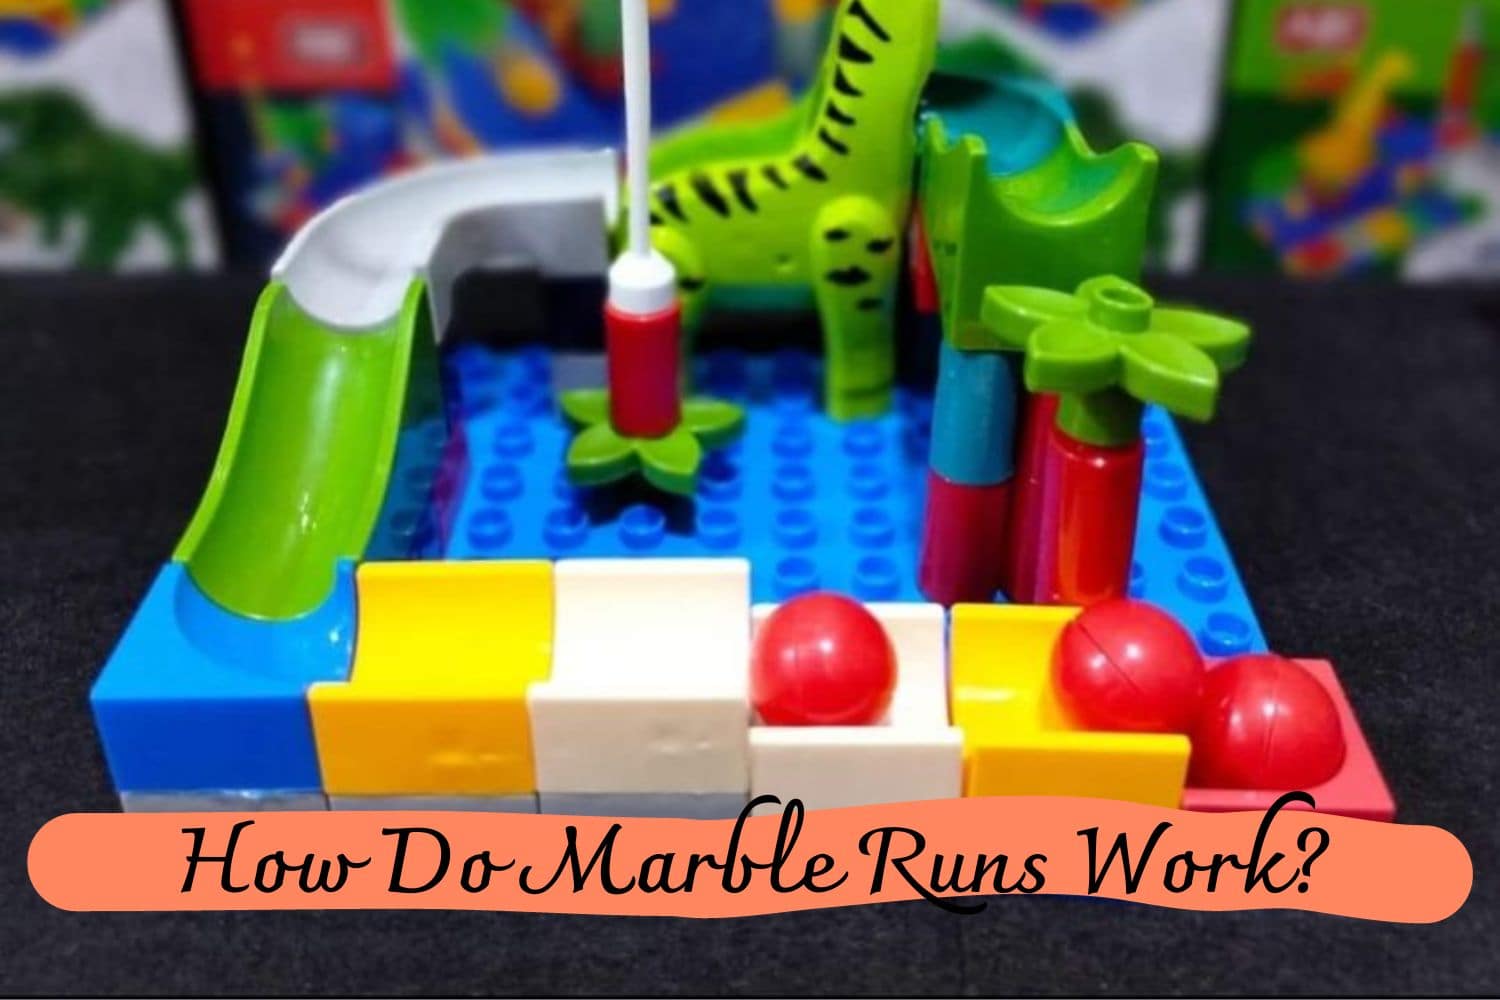 How Do Marble Runs Work?